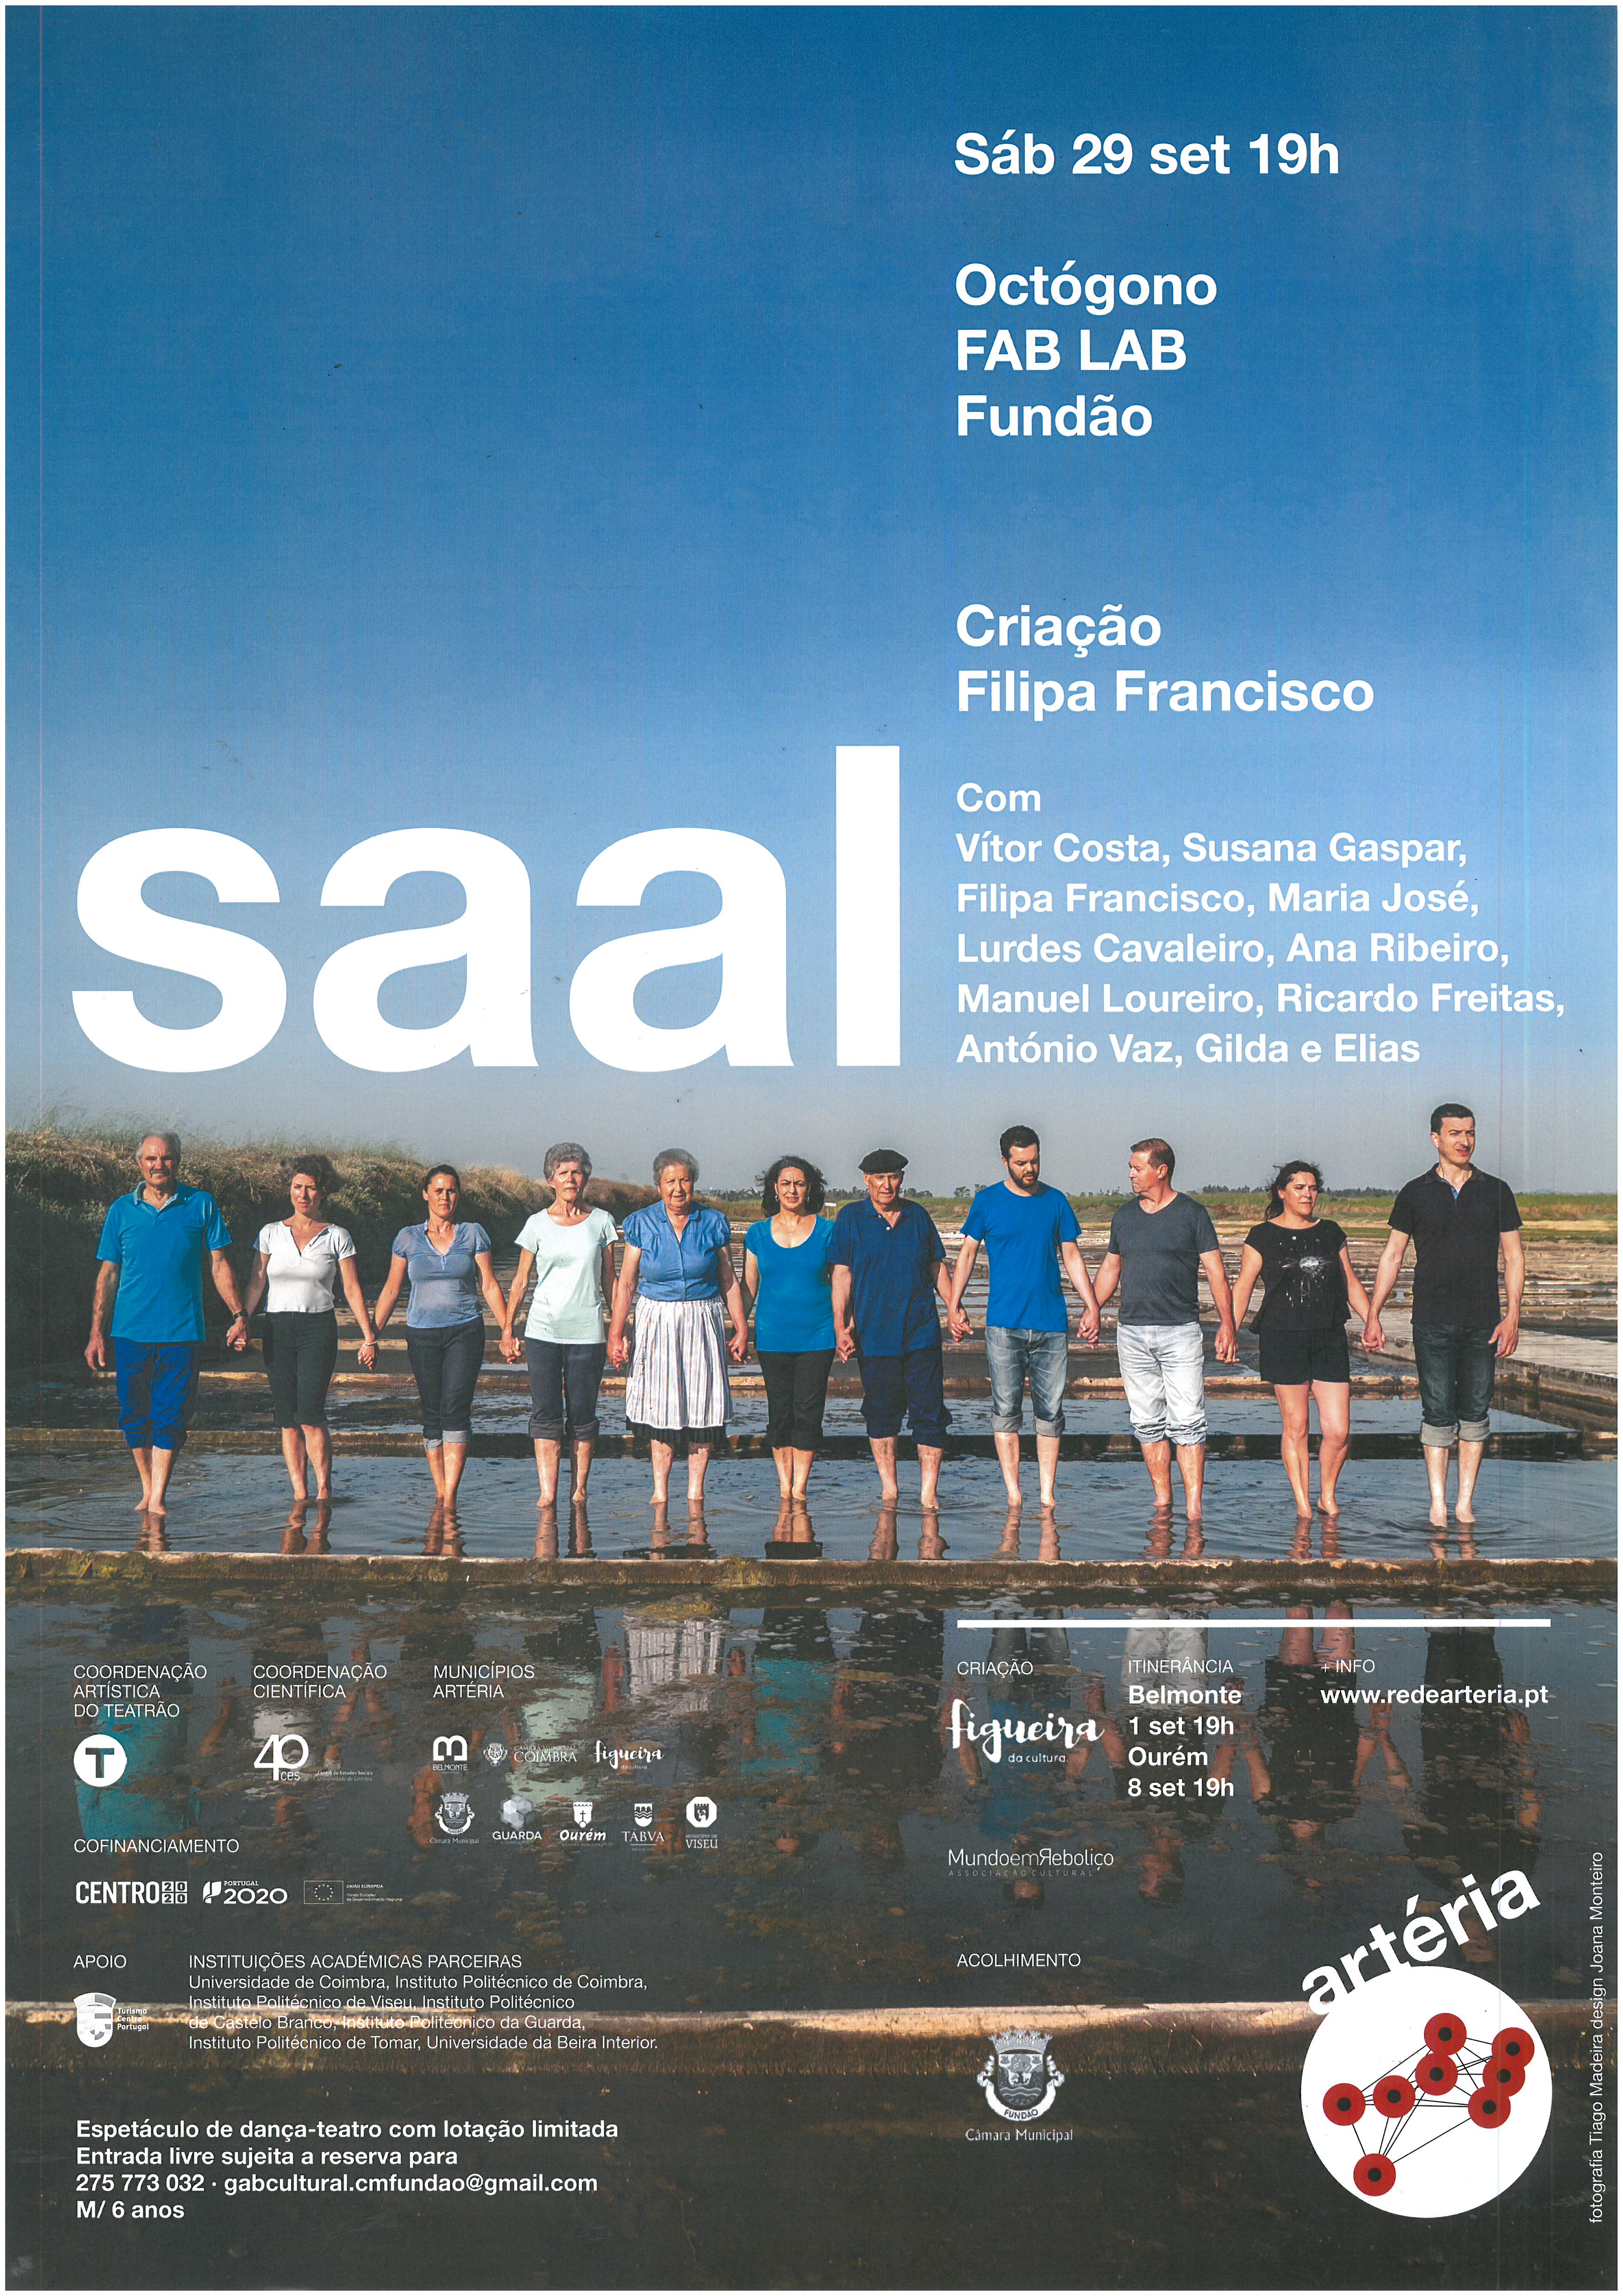 Fundão: Peça de Teatro "SAAL" no Octógono